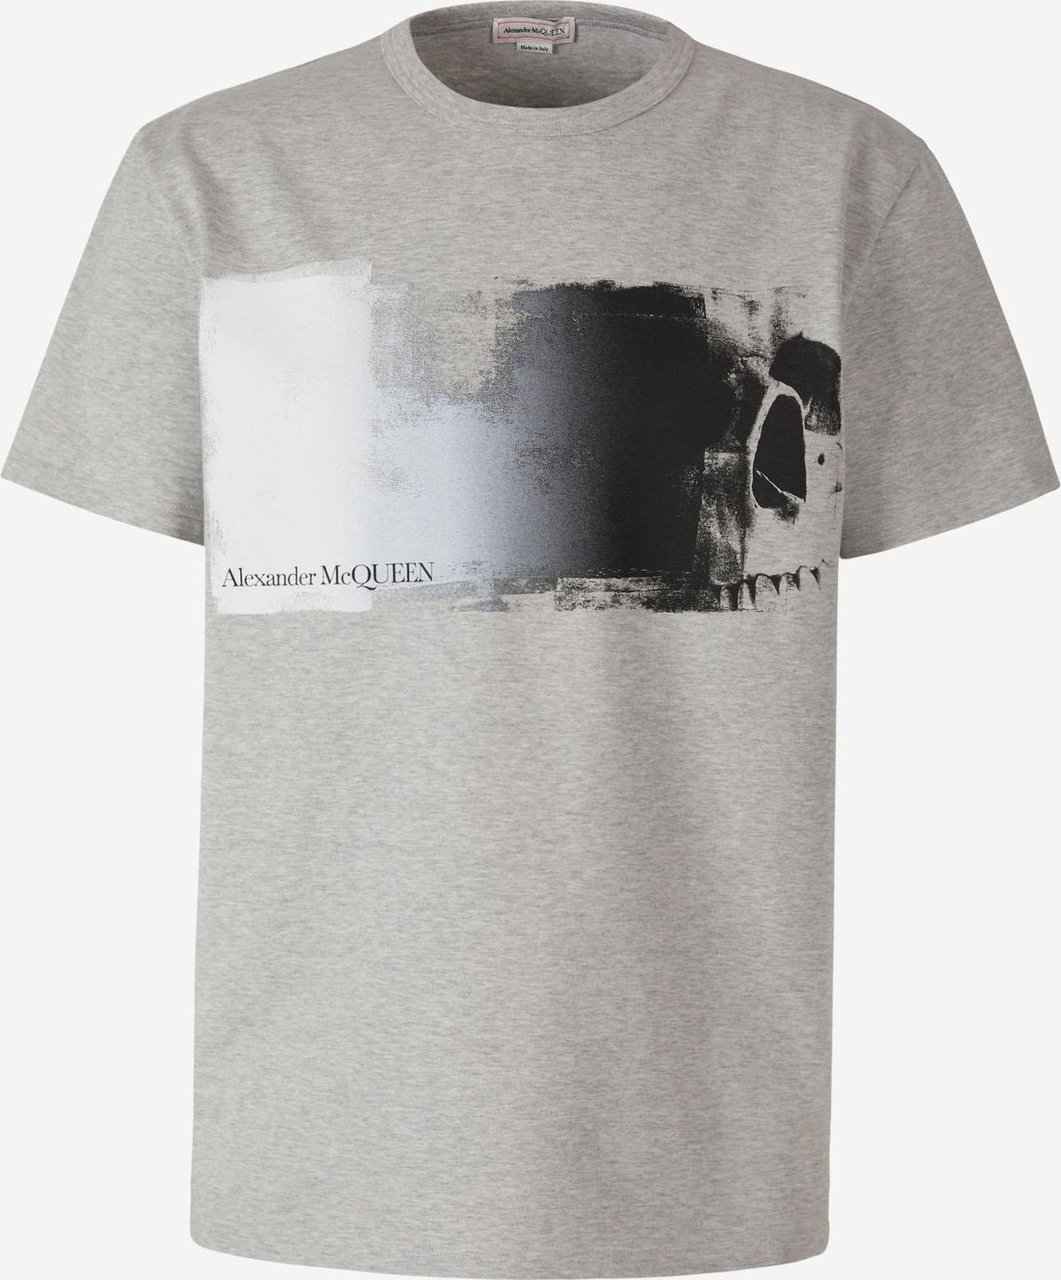 Alexander McQueen Skull Graphic T-Shirt Grijs